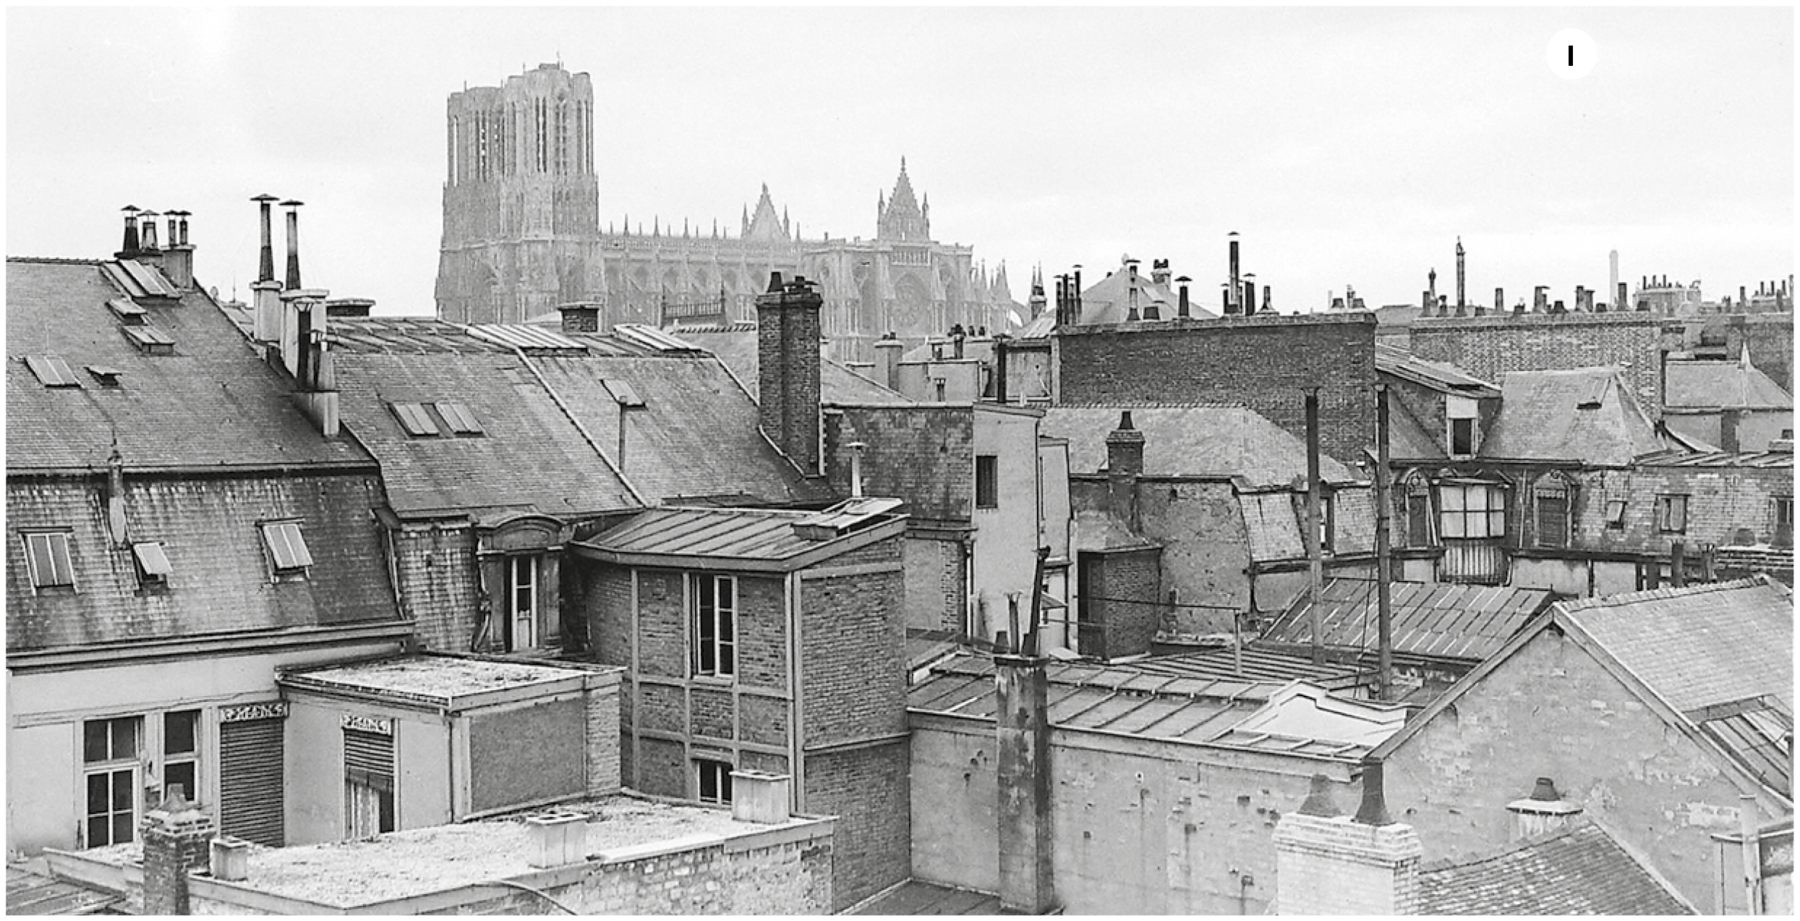 Fotografia um. Em preto e branco . Vista do alto de cidade francesa no final dos anos 30, com prédios pequenos entre residências. Ao fundo, uma catedral com duas torres à direita.